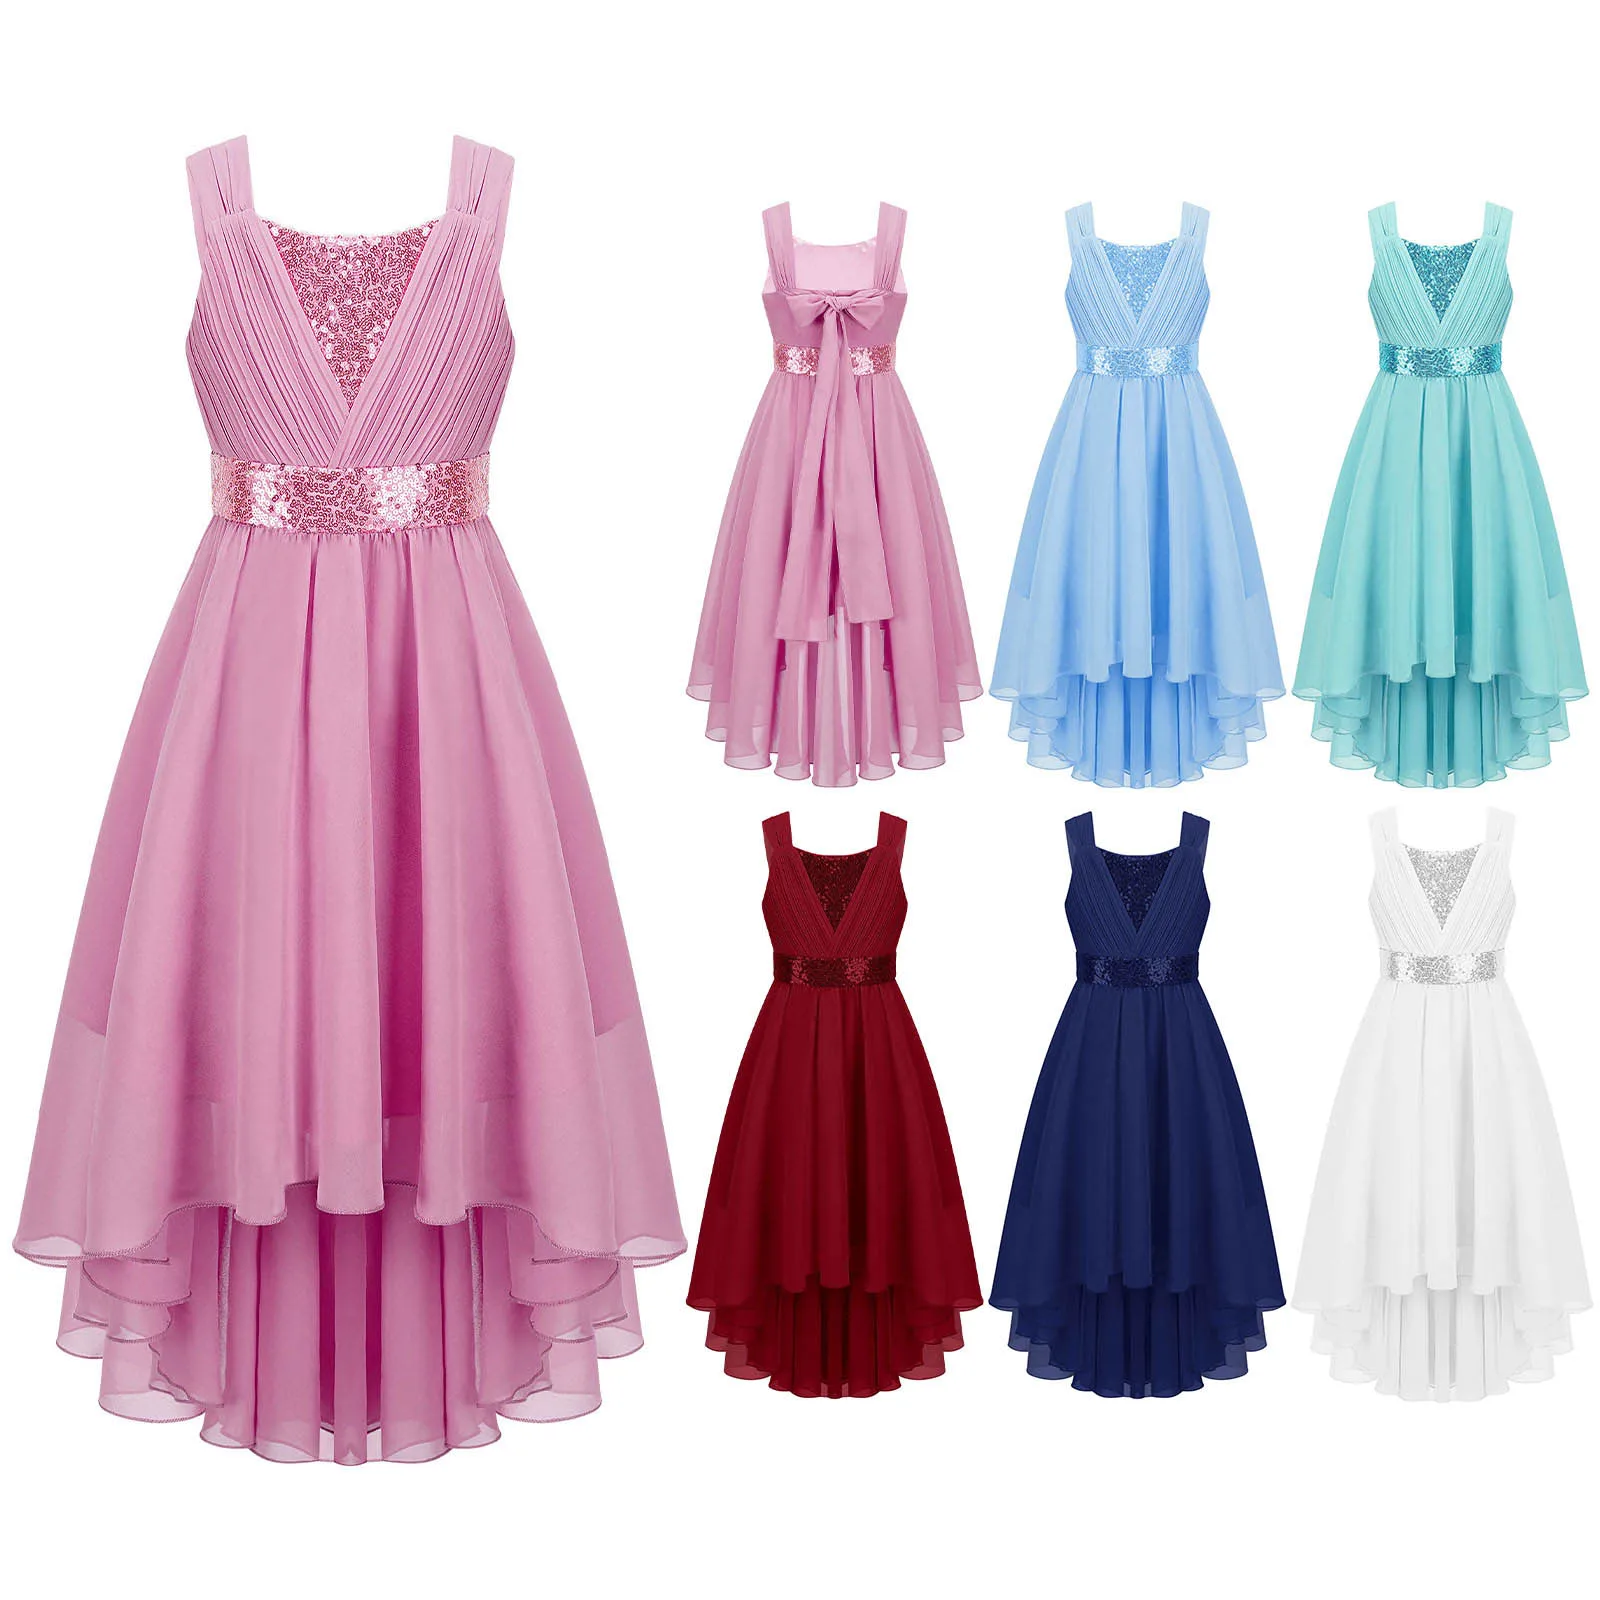 Wholesale Rushed Sleeveless High-low Hem Princess Chiffon Dress Kids ...